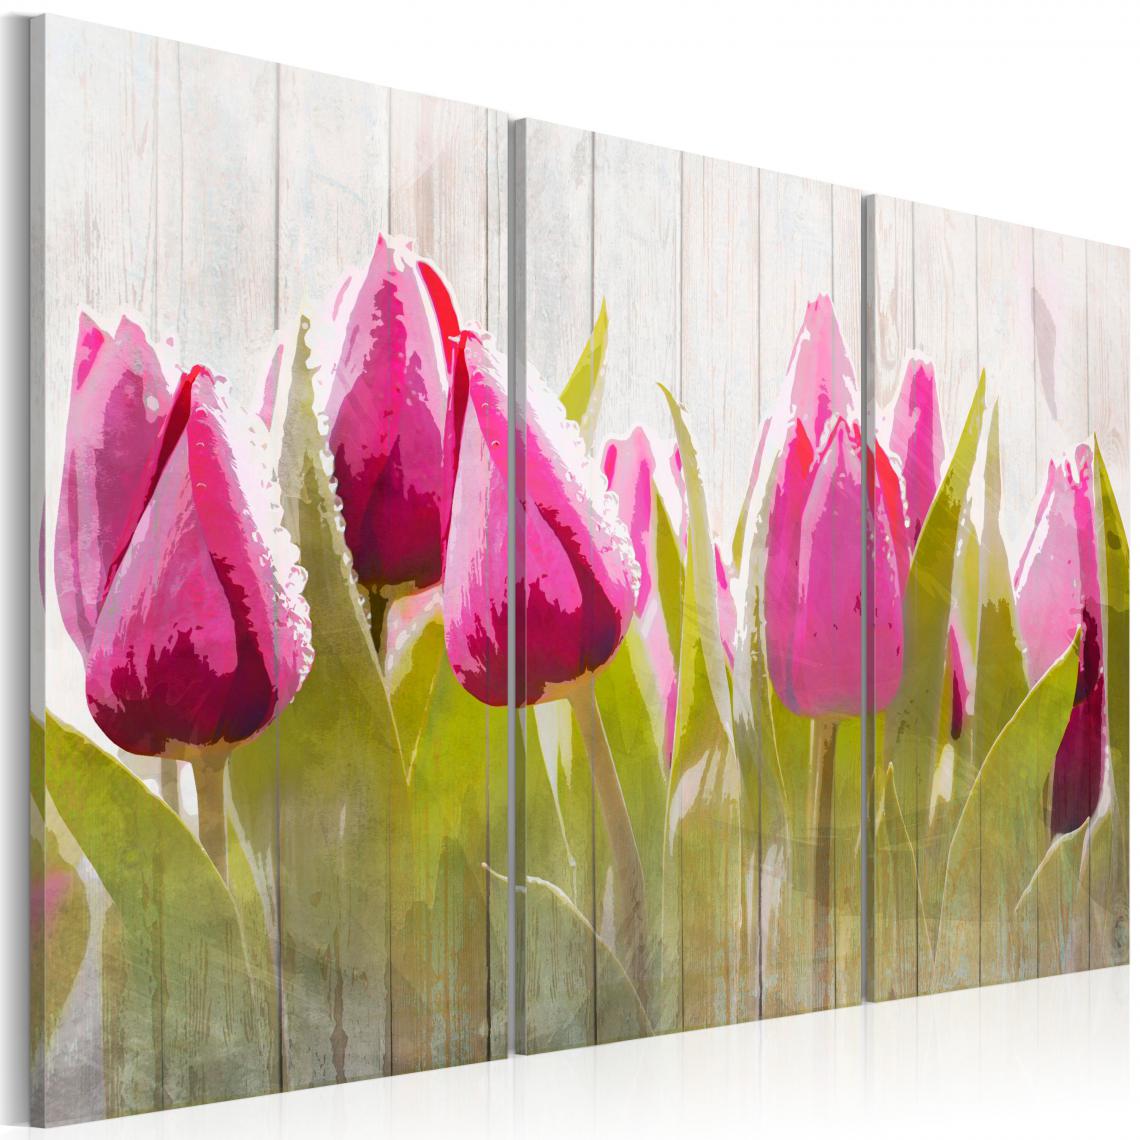 Decoshop26 - Tableau sur toile en 3 panneaux décoration murale image imprimée cadre en bois à suspendre Bouquet de printemps de tulipes 120x80 cm 11_0005760 - Tableaux, peintures